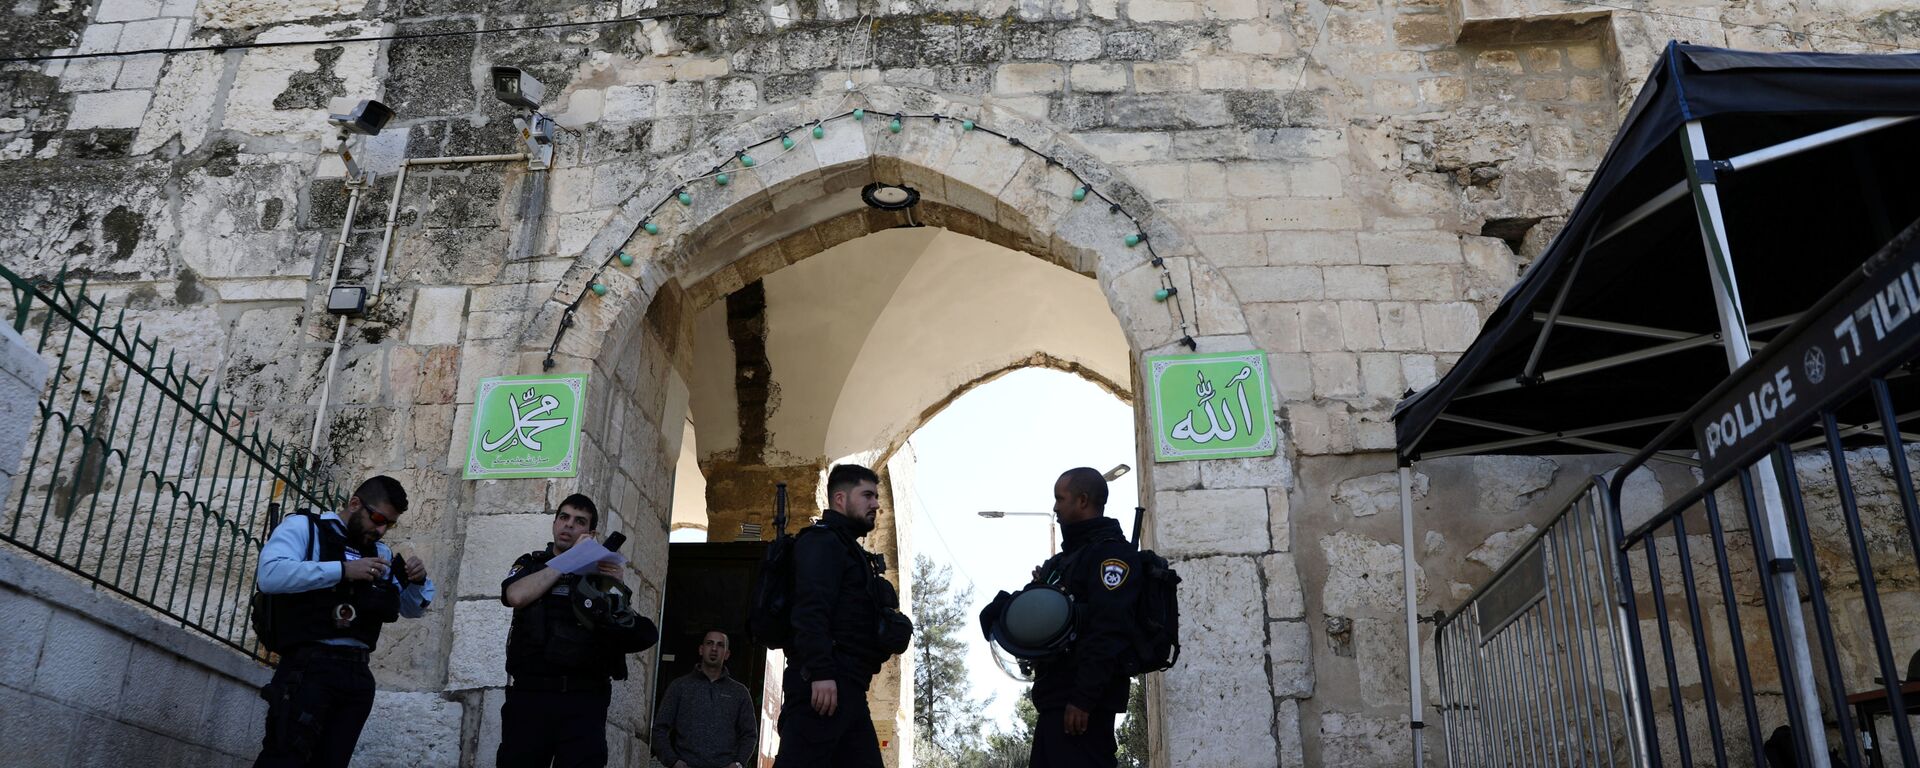 ضباط الشرطة الإسرائيلية يقومون بتأمين المنطقة في أعقاب إطلاق نار في محيد المسجد الأقصى في القدس - سبوتنيك عربي, 1920, 01.04.2021